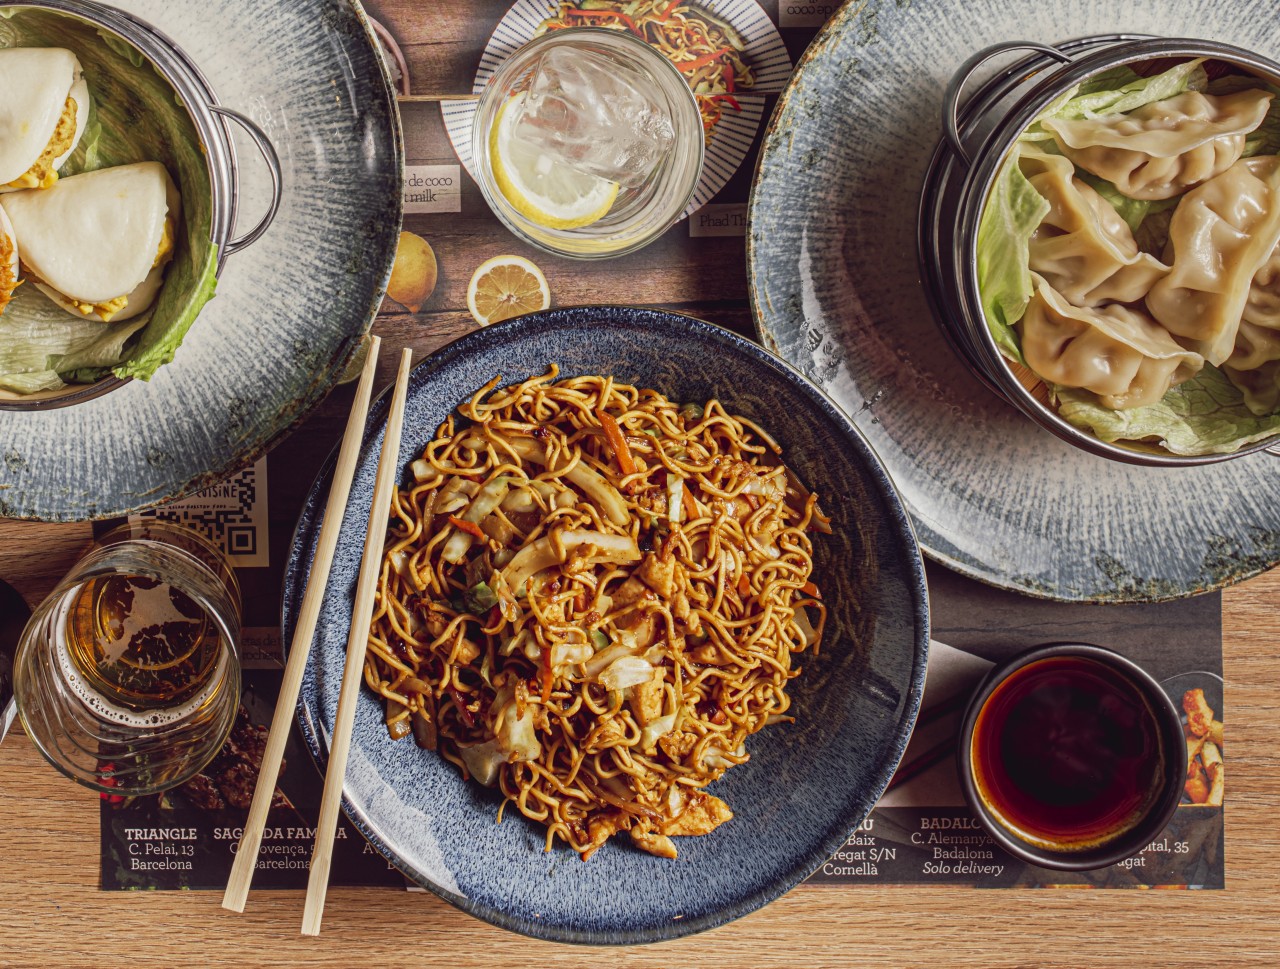 Qué tan saludable es la comida china?